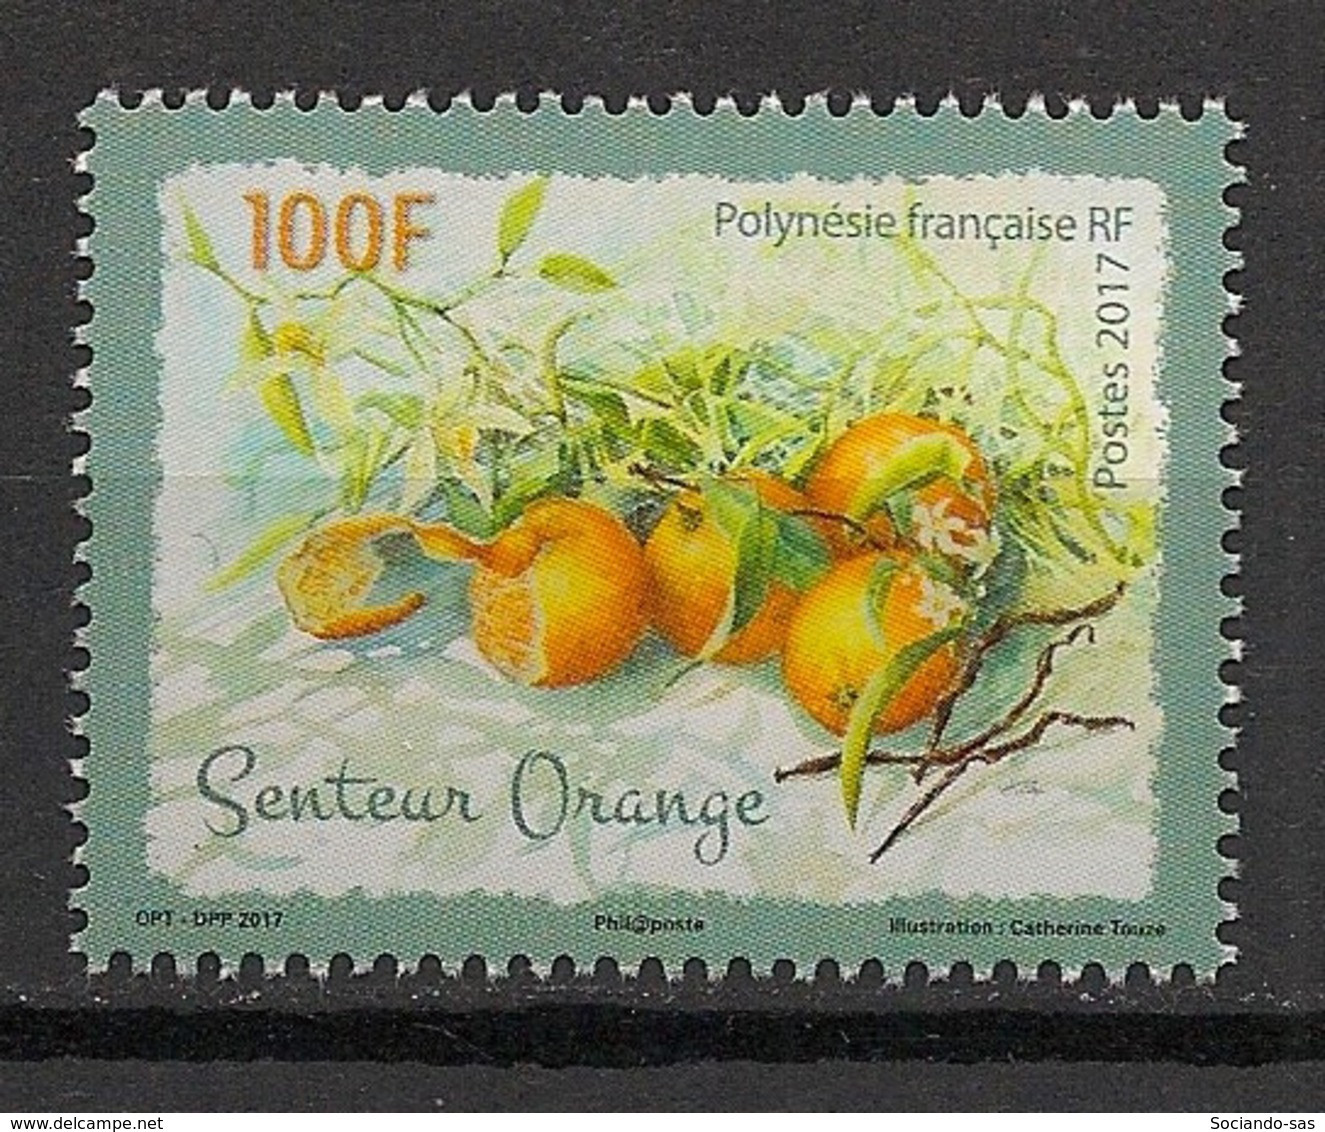 POLYNESIE - 2017 - N°YT. 1155 - Fruits / Orange - Neuf Luxe ** / MNH / Postfrisch - Nuevos